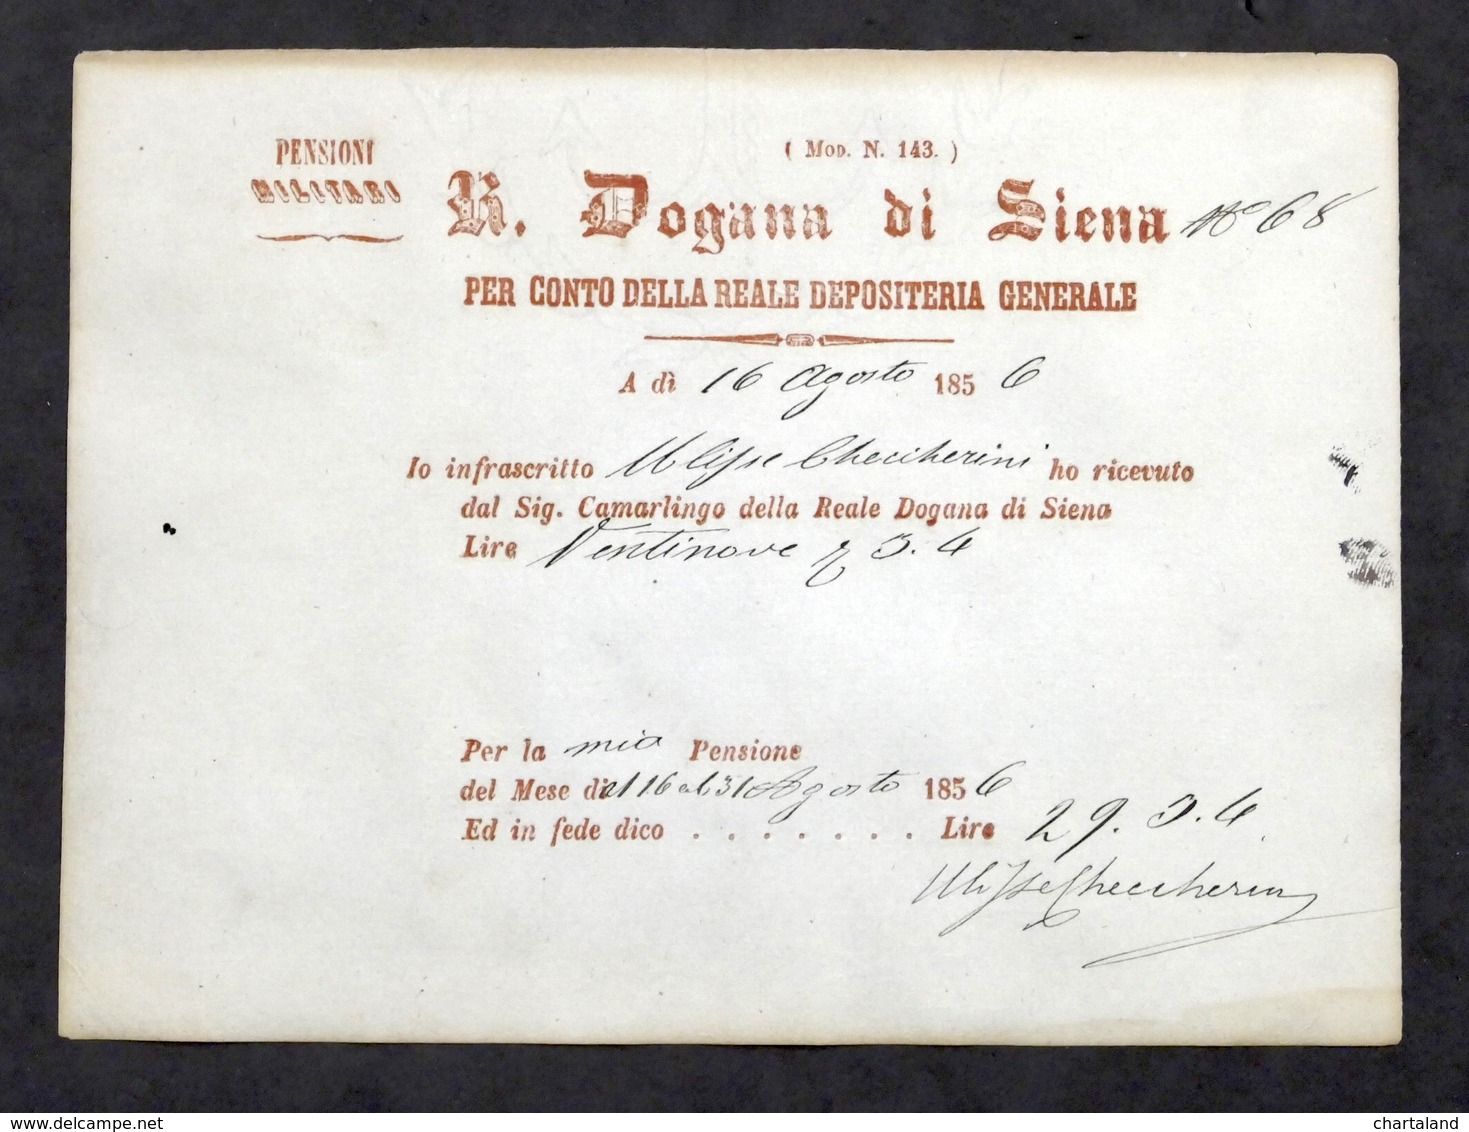 Ricevuta Ritiro Pensione Militare Dalla Reale Dogana Di Siena - 1856 - Documentos